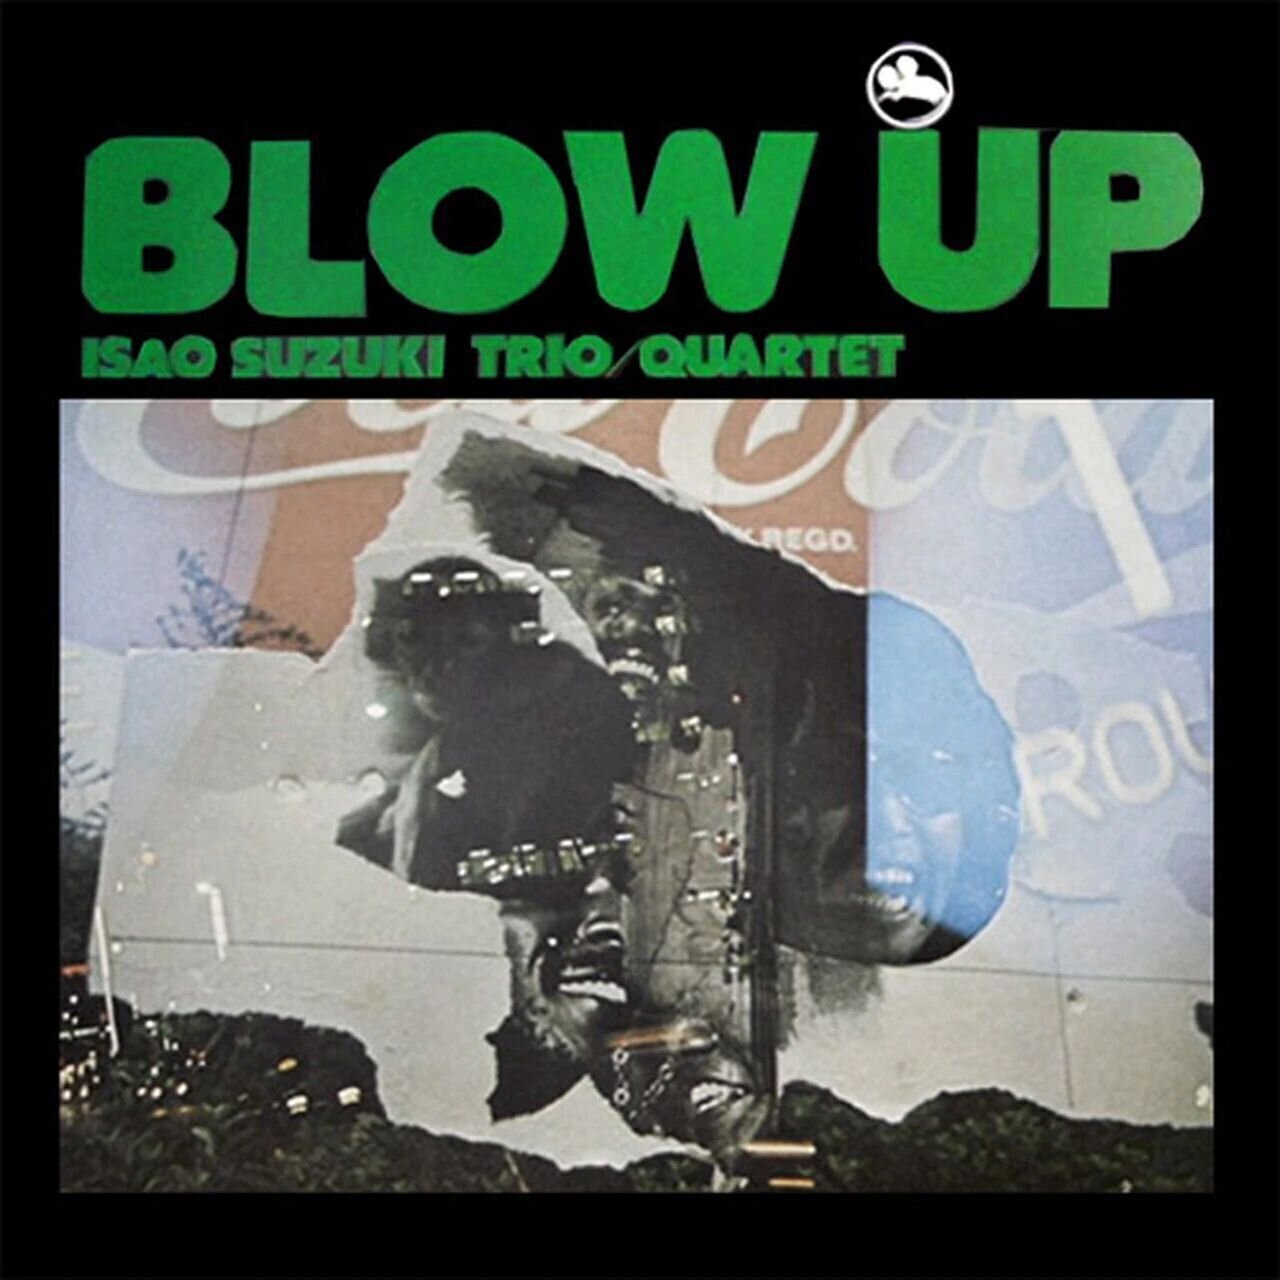 Vinyl Record Isao Suzuki Trio - Blow Up (2 LP)